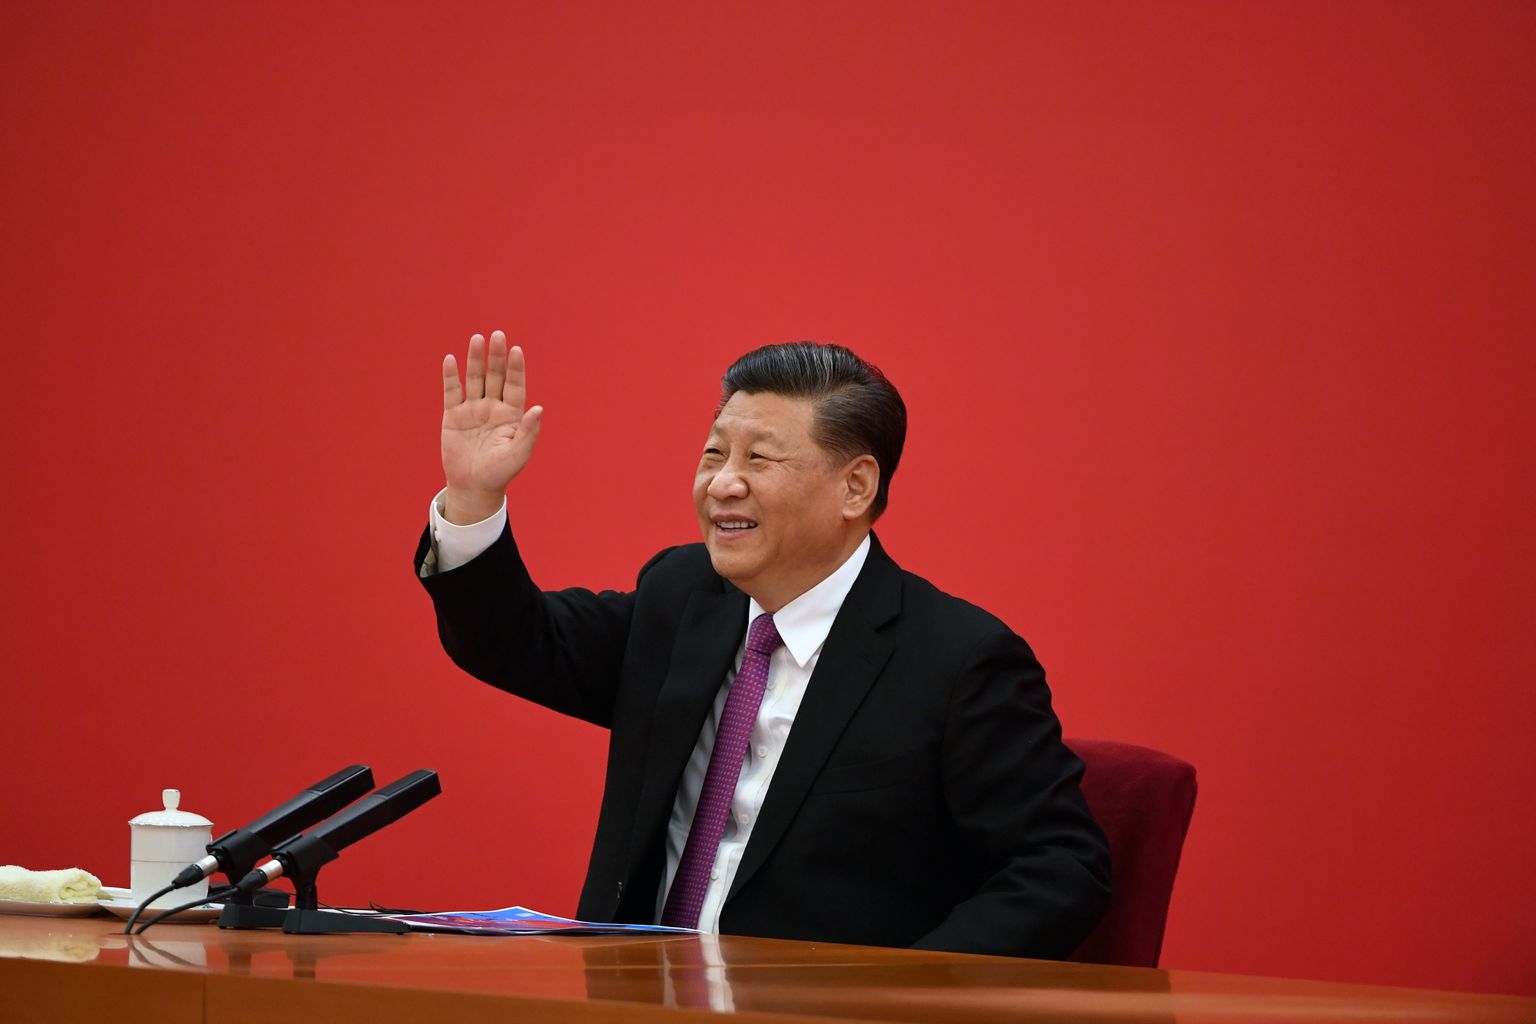  Ķīnas prezidents Sji Dzjiņpins